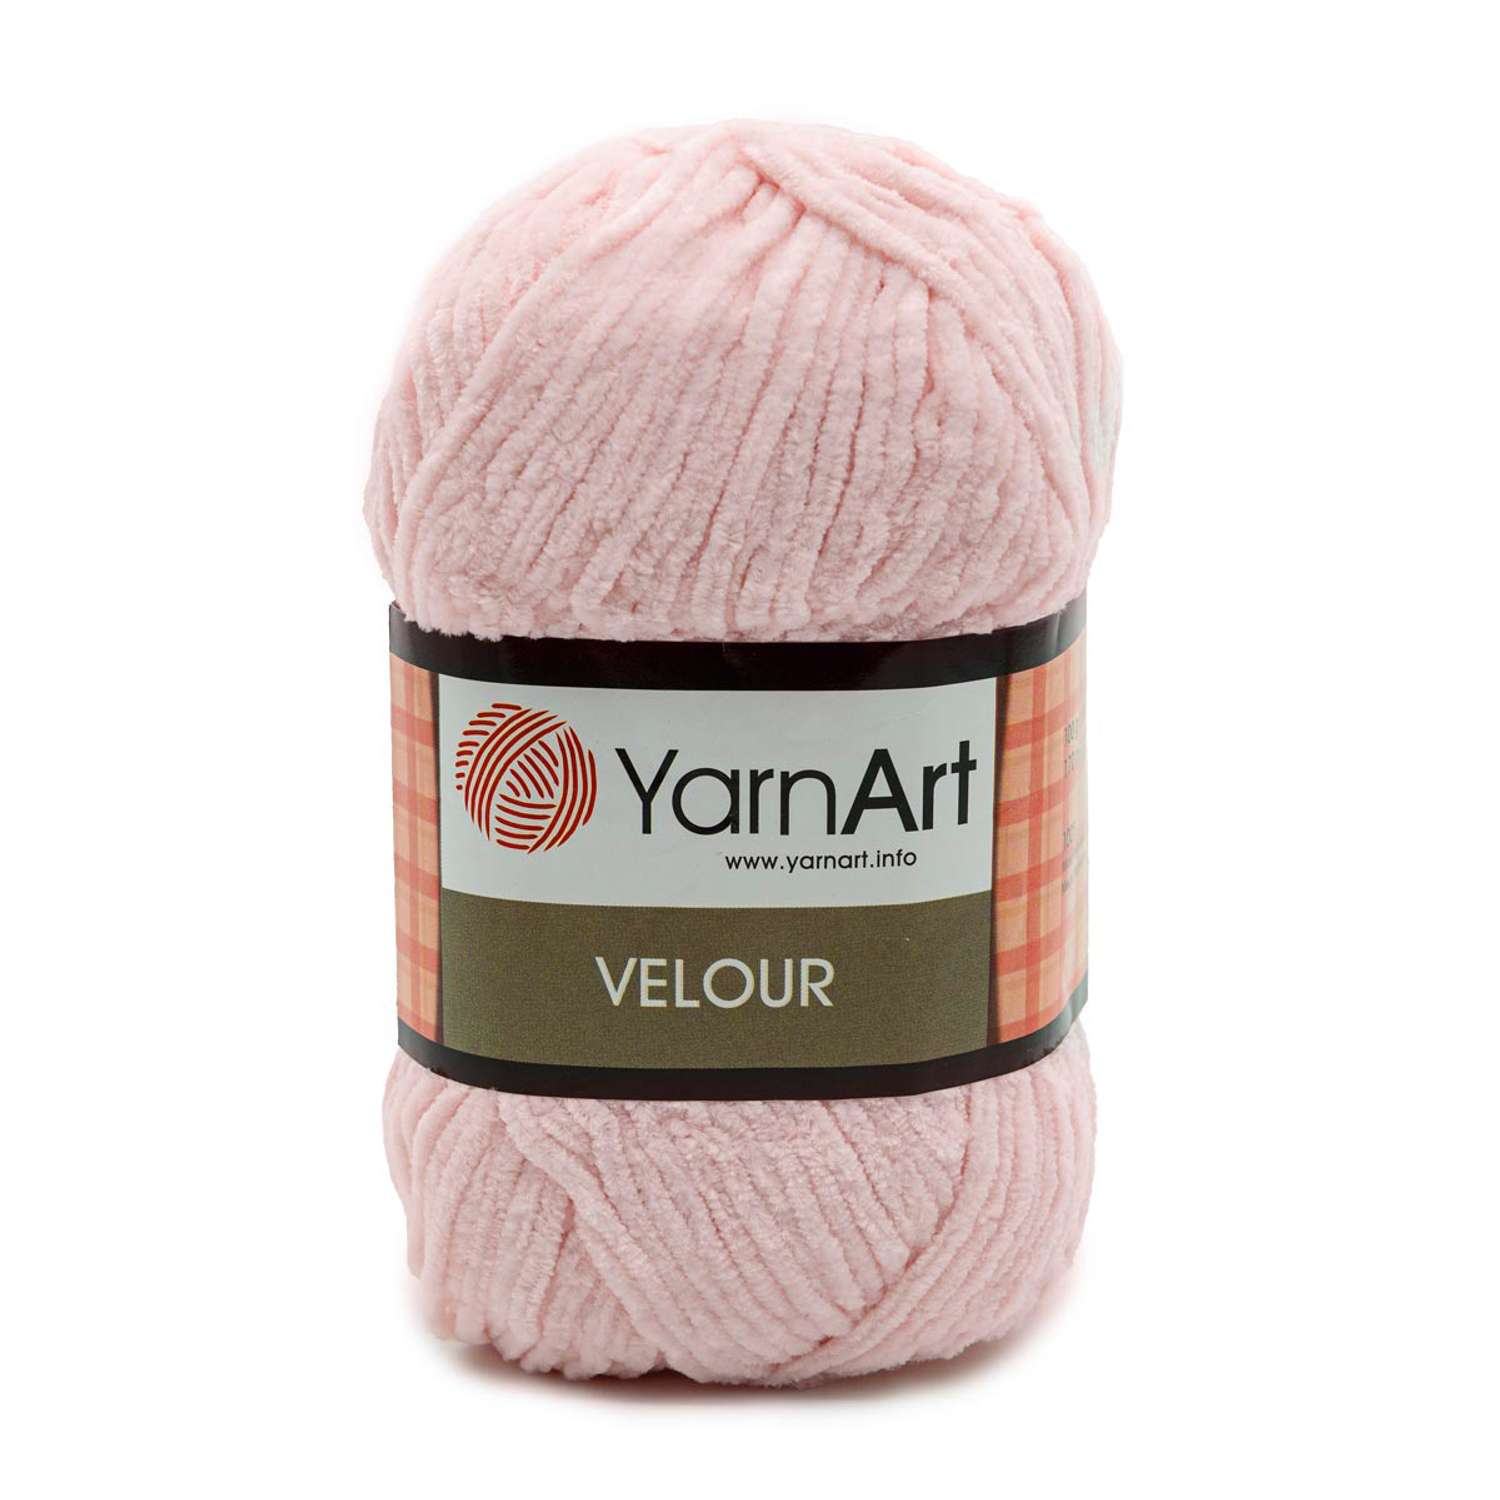 Пряжа для вязания YarnArt Velour 100 г 170 м микрополиэстер мягкая велюровая 5 мотков 866 нежно-розовый - фото 6